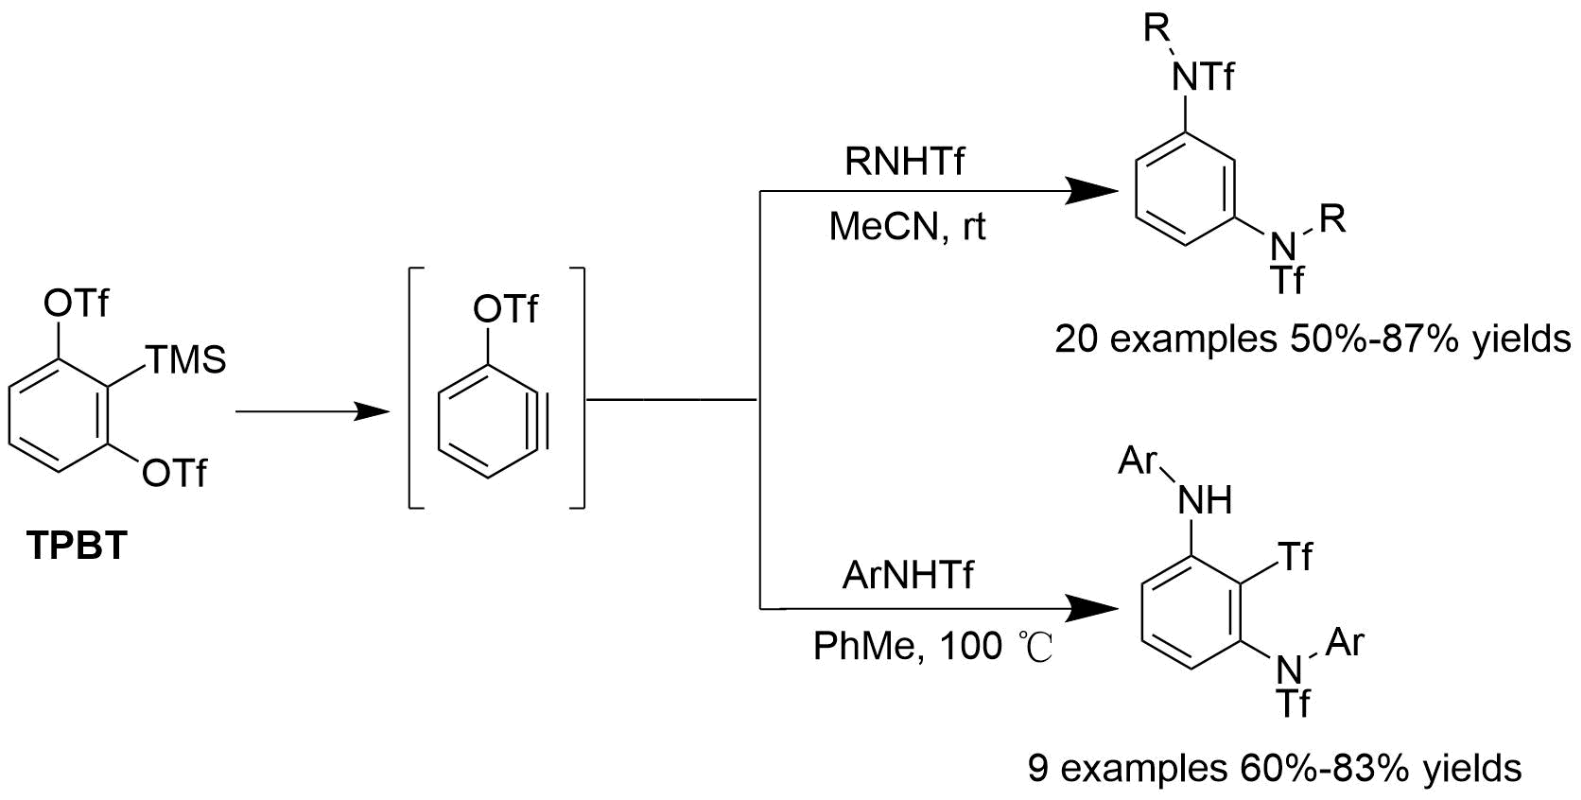 磺酸根保护的芳胺与TPBT试剂在不同活化剂下能够生成不同种化合物<sup>[1]</sup>。